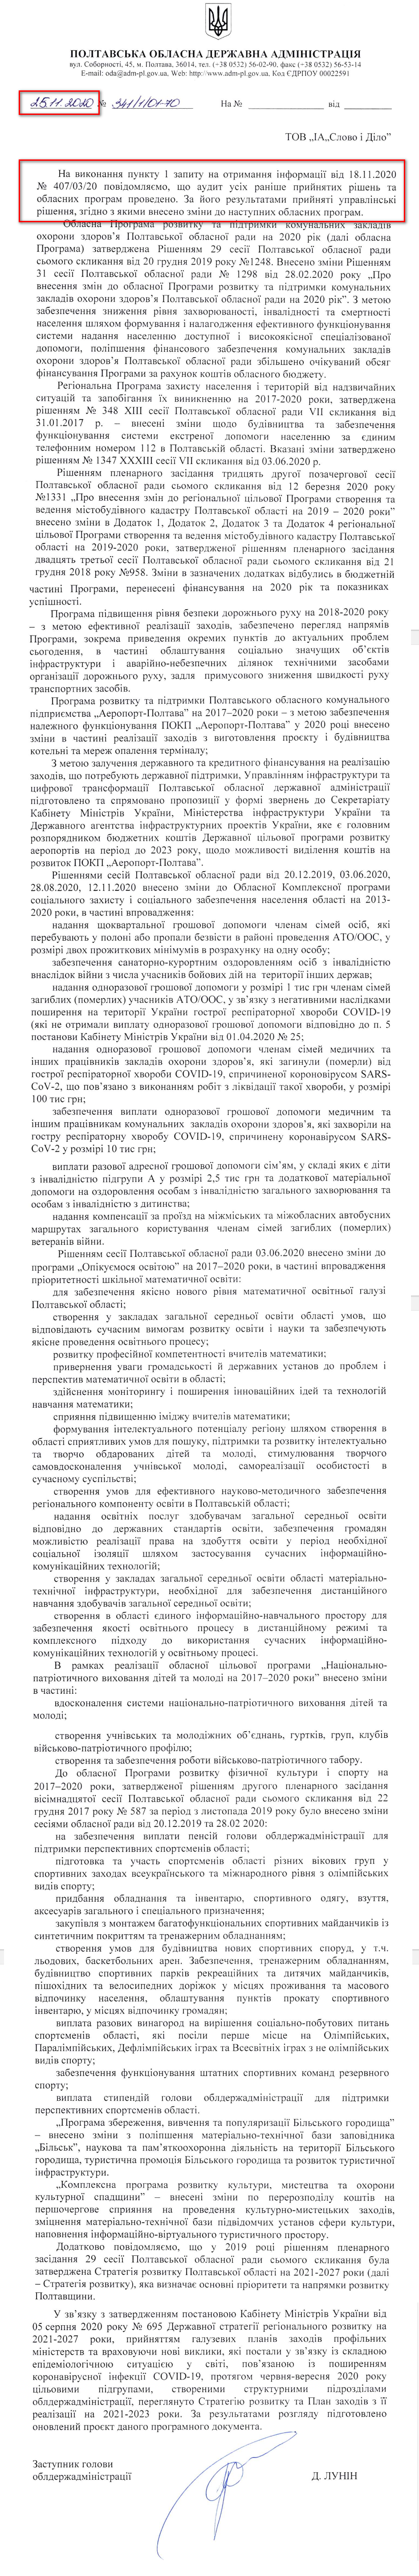 Лист Полтавської ОДА від 25 листопада 2020 року